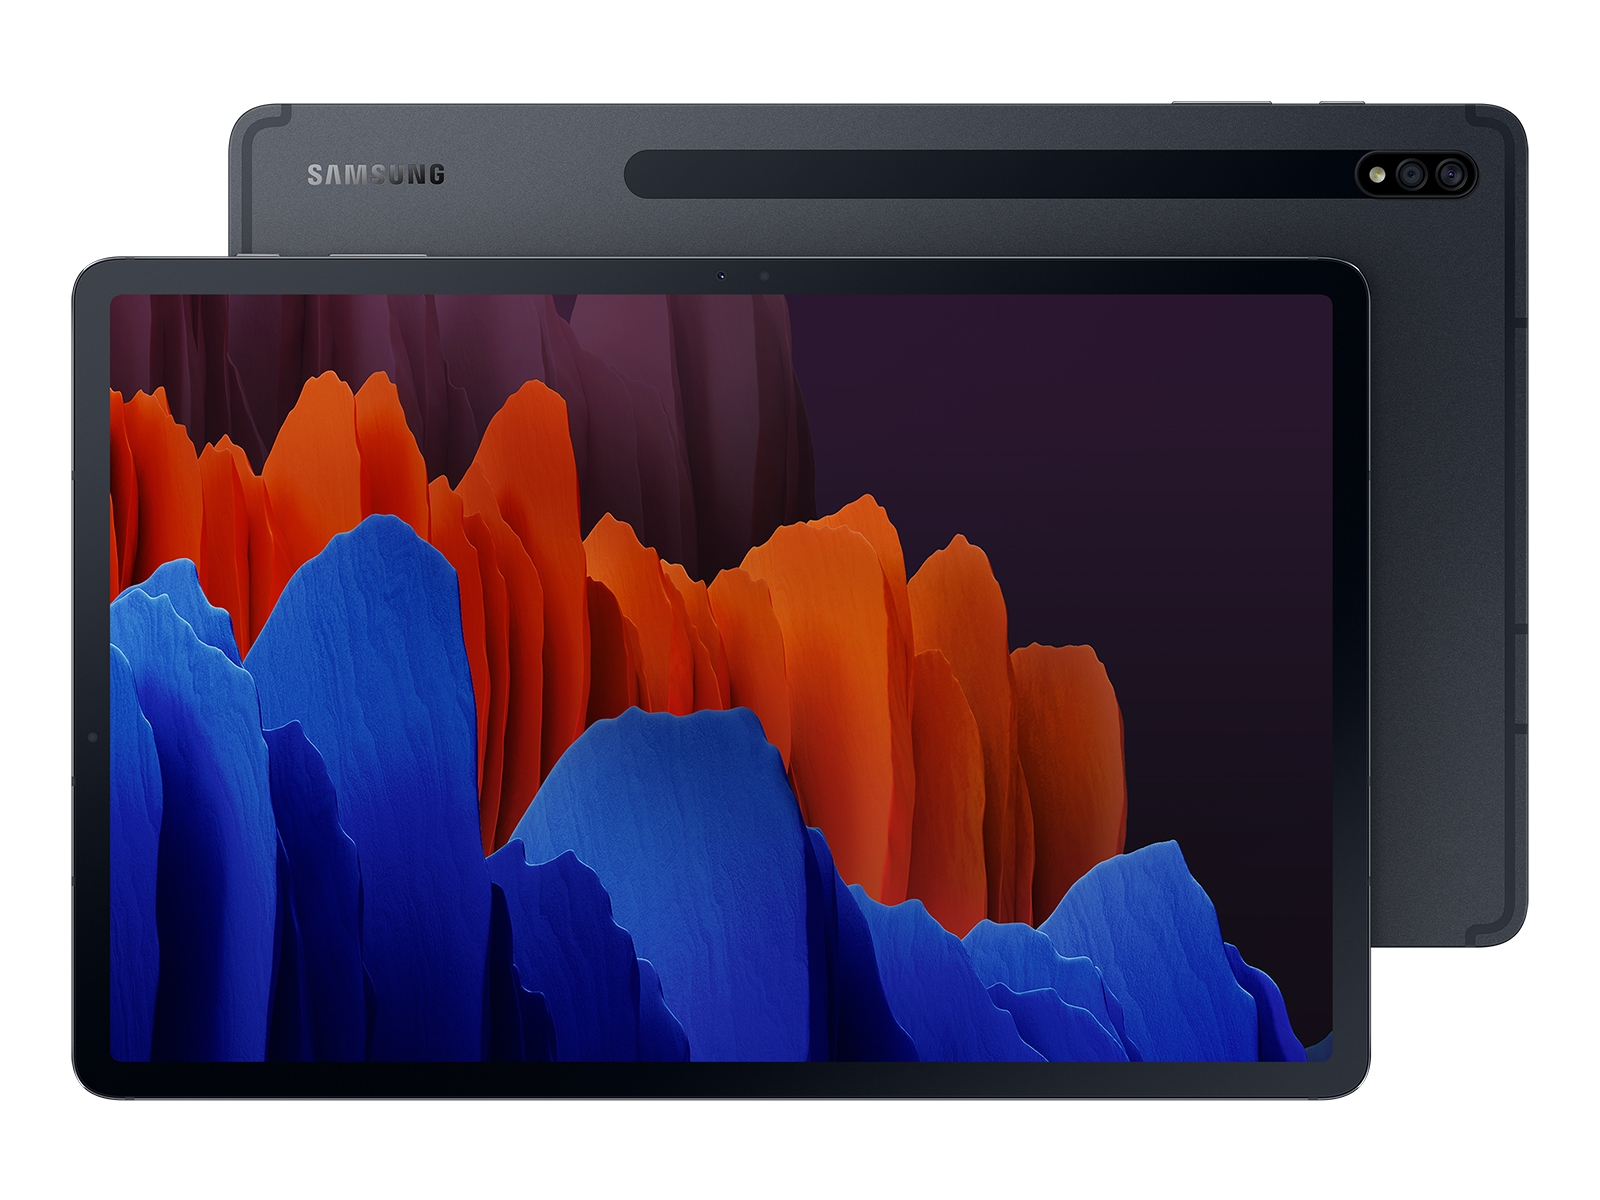 Galaxy Tab S7+, 256GB, Mystic Black Tablets - SM-T970NZKEXAR 